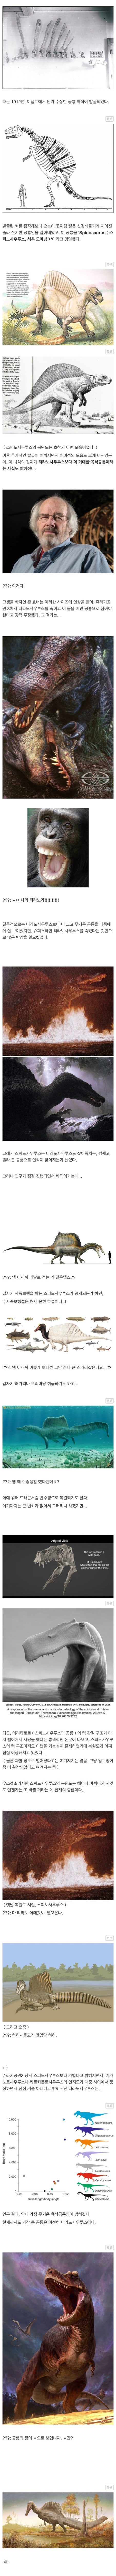 12 험난한 공룡 복원.jpg